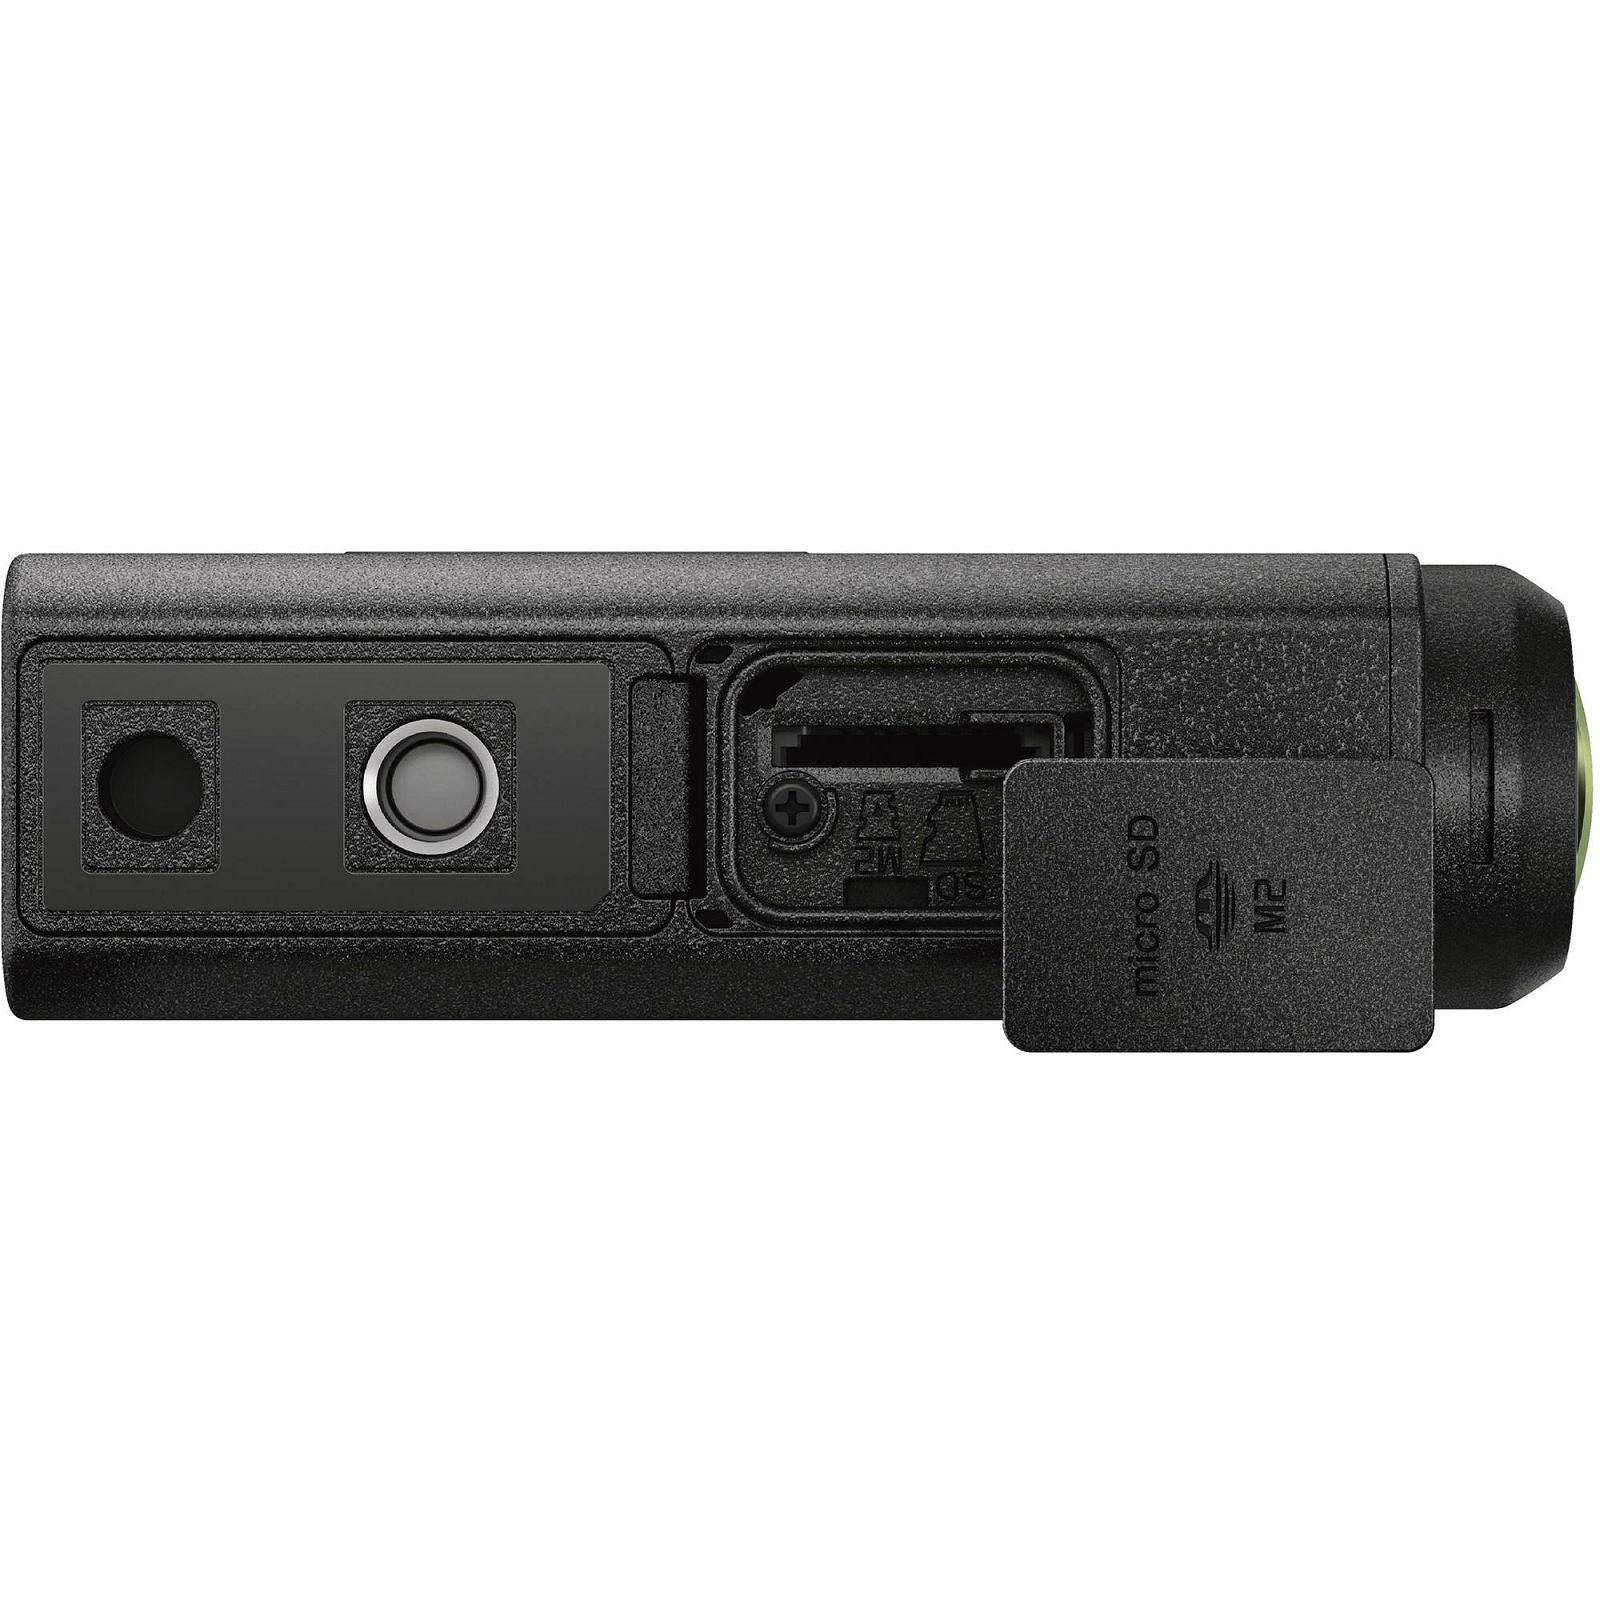 Sony HDR-AS50 ActionCam sportska akcijska kamera FullHD 60p (HDRAS50B.CEN)